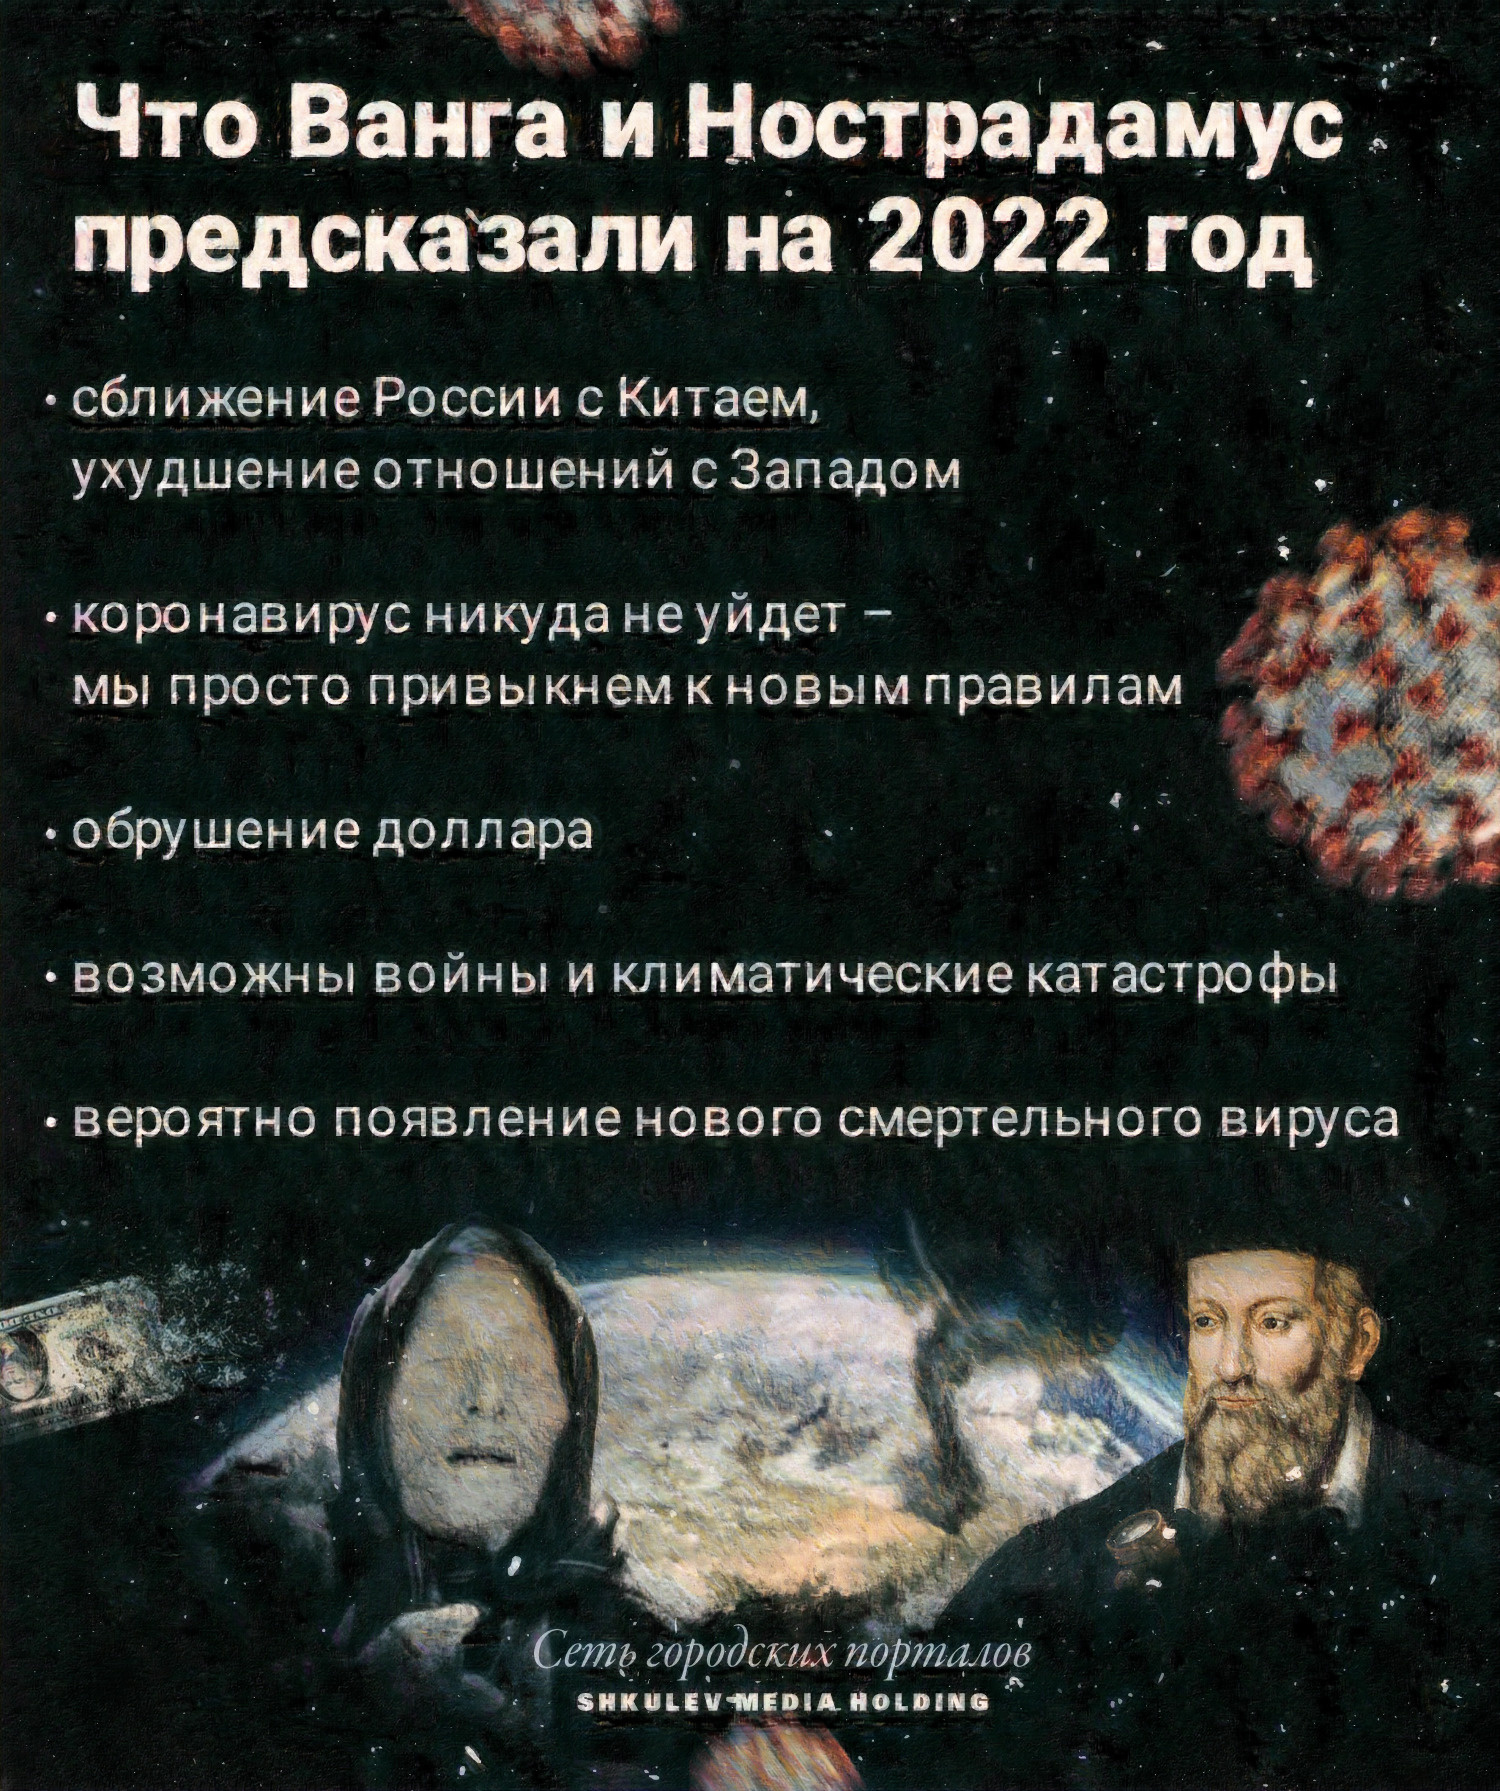 Так будет выглядеть 2022 год, по версии Ванги и Нострадамуса (и людей, которые толкуют их предсказания)